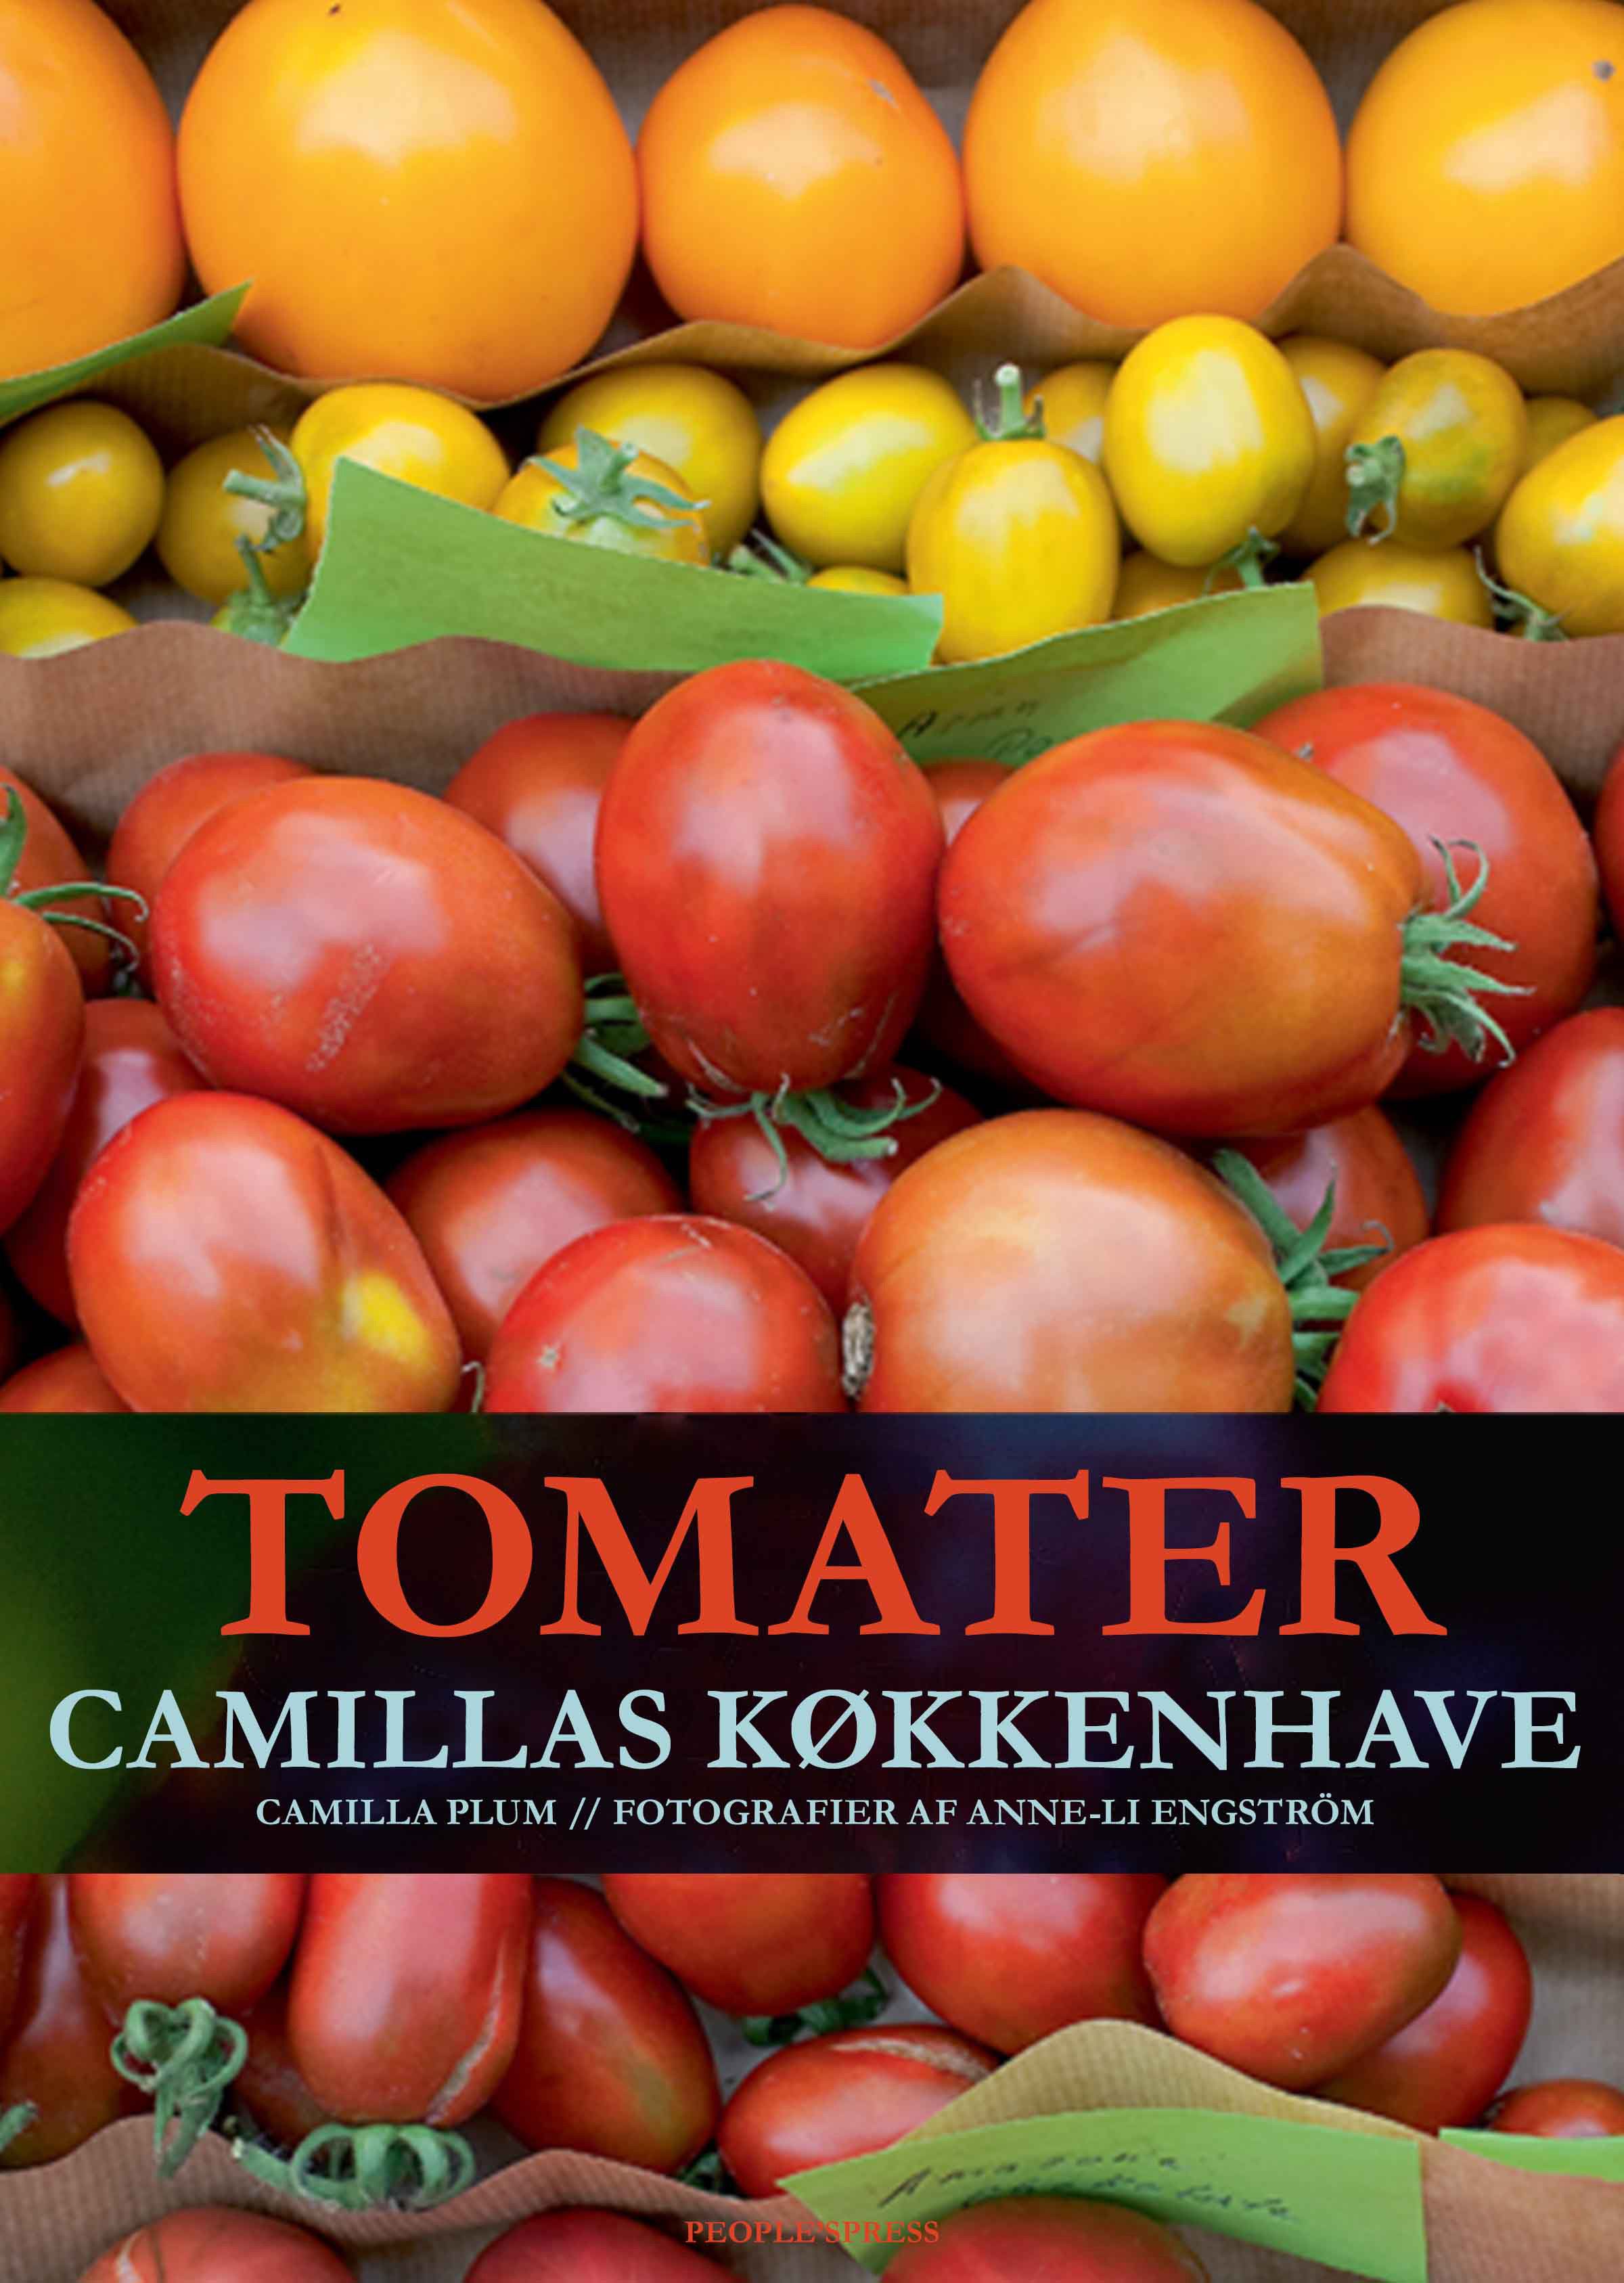 Tomater - Camillas køkkenhave, e-bog af Camilla Plum